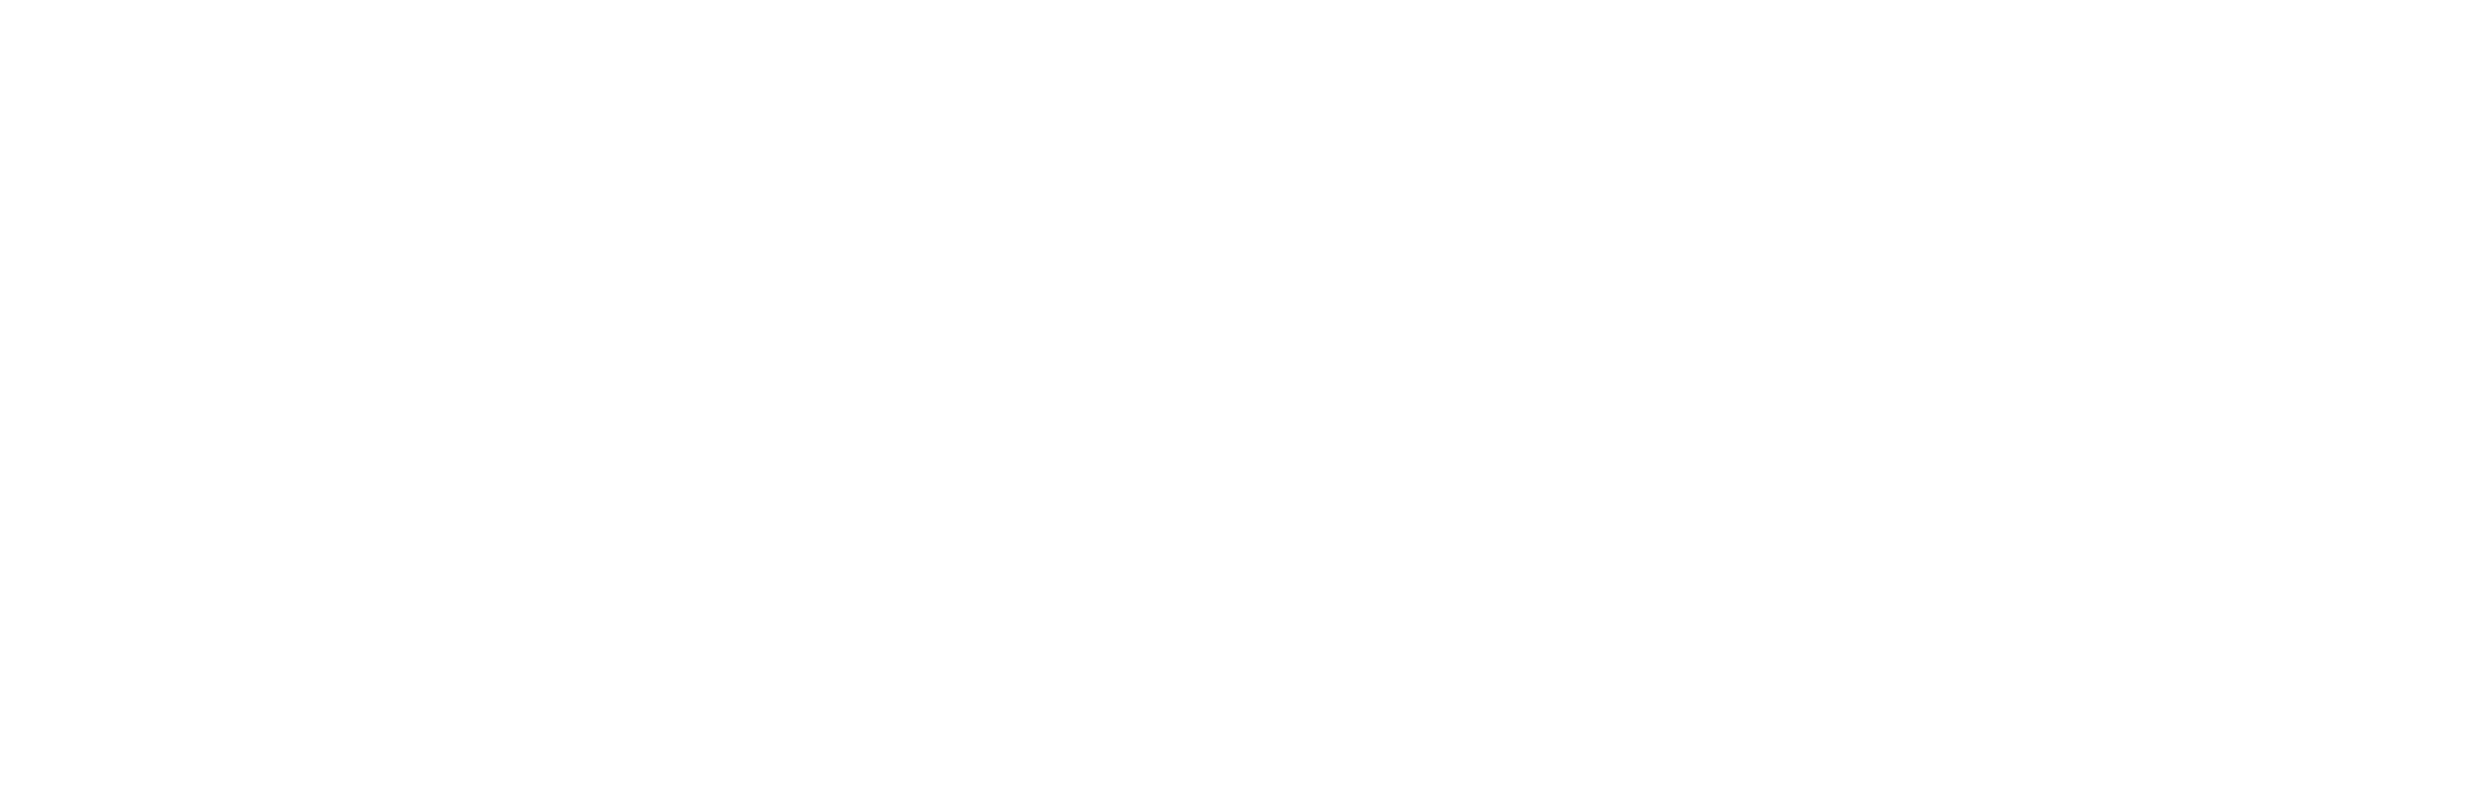 SEAX-logo